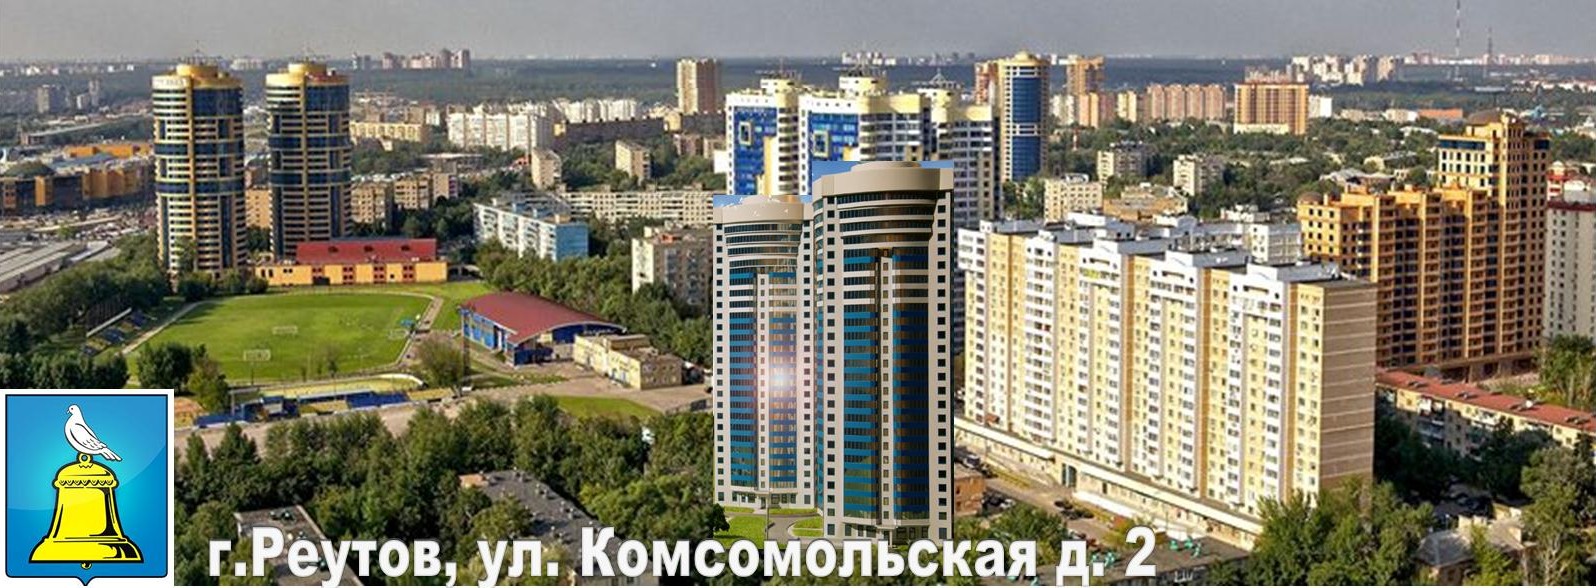 Сайт обманутых дольщиков Комсомольская д. 2 г.Реутов